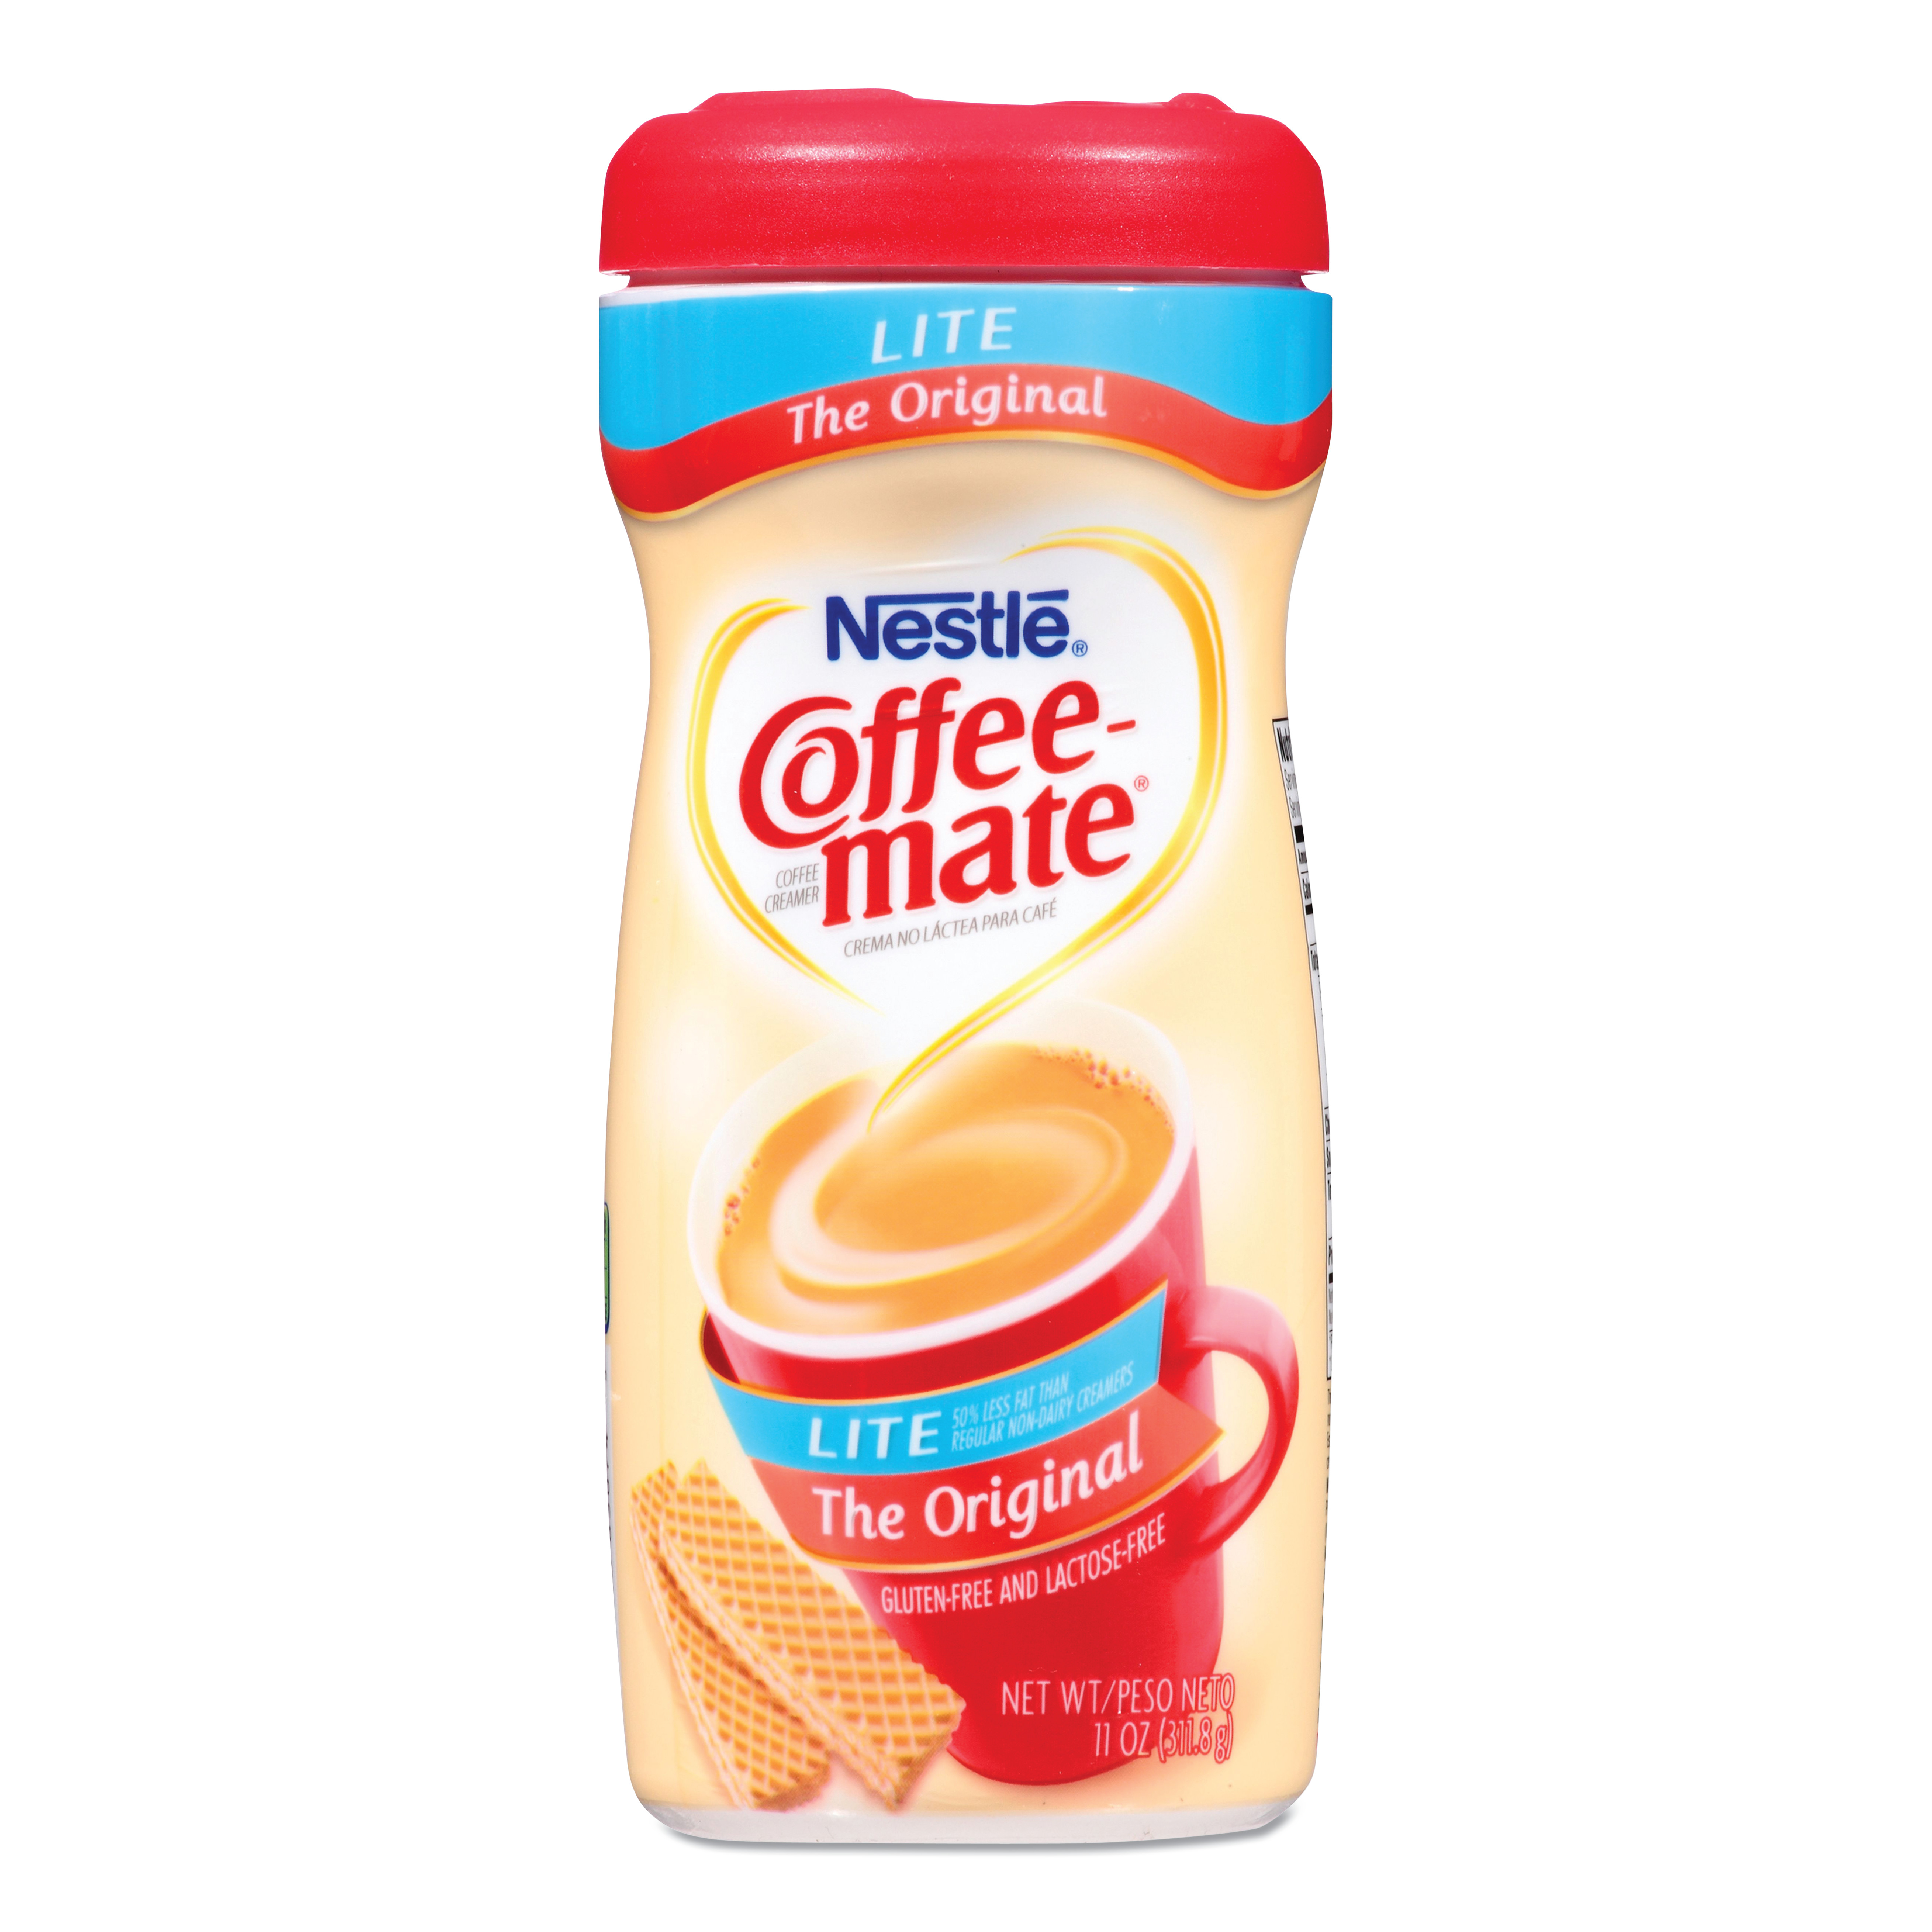  Coffee-mate 005000074185 Original Lite Powdered Creamer, 11oz Canister (NES74185) 